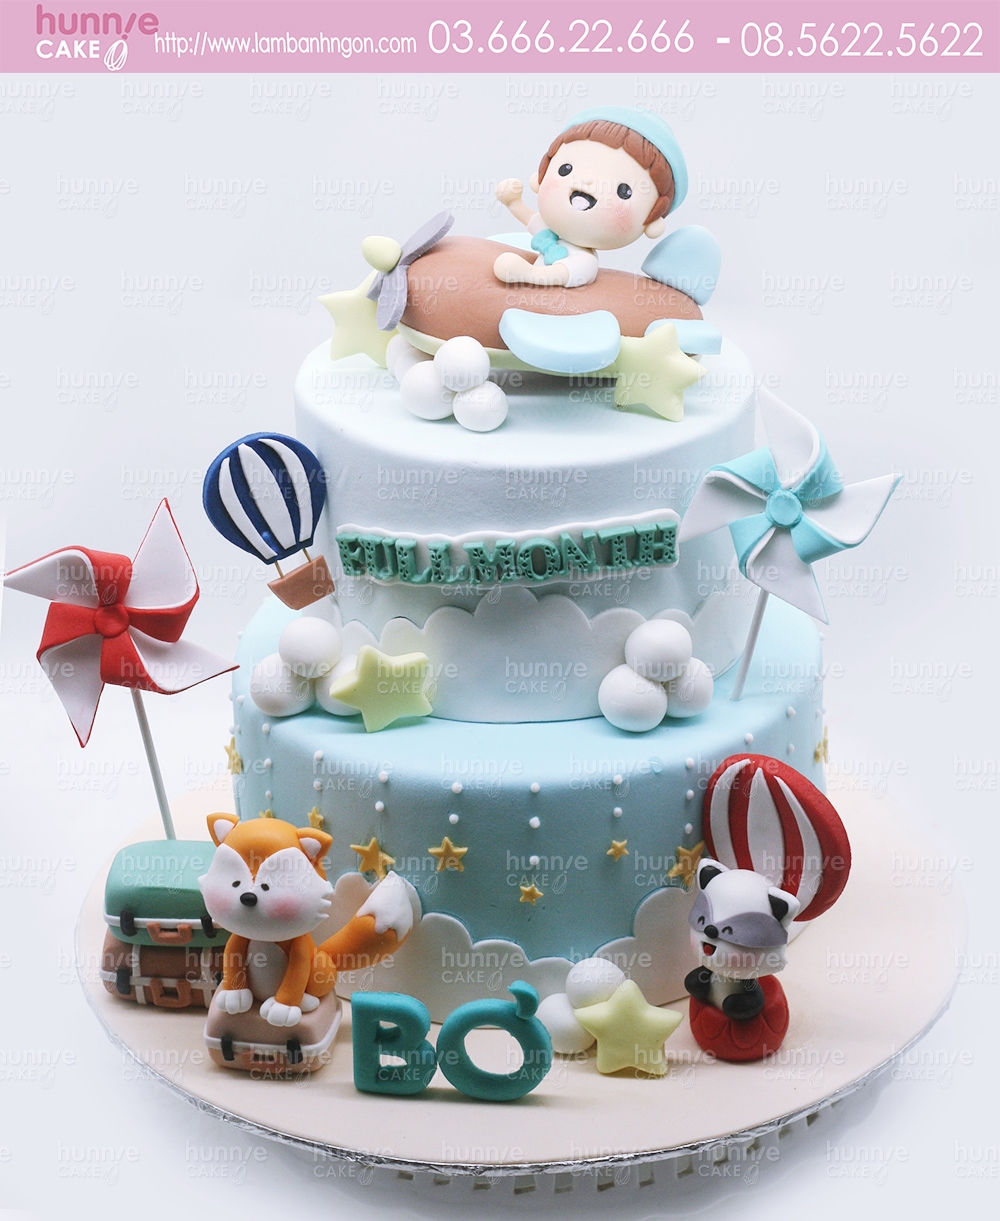 Bánh fondant 2 tầng chủ đề chuột và mặt trăng cho sinh nhật bé trai  Tiny  Pretty Cake